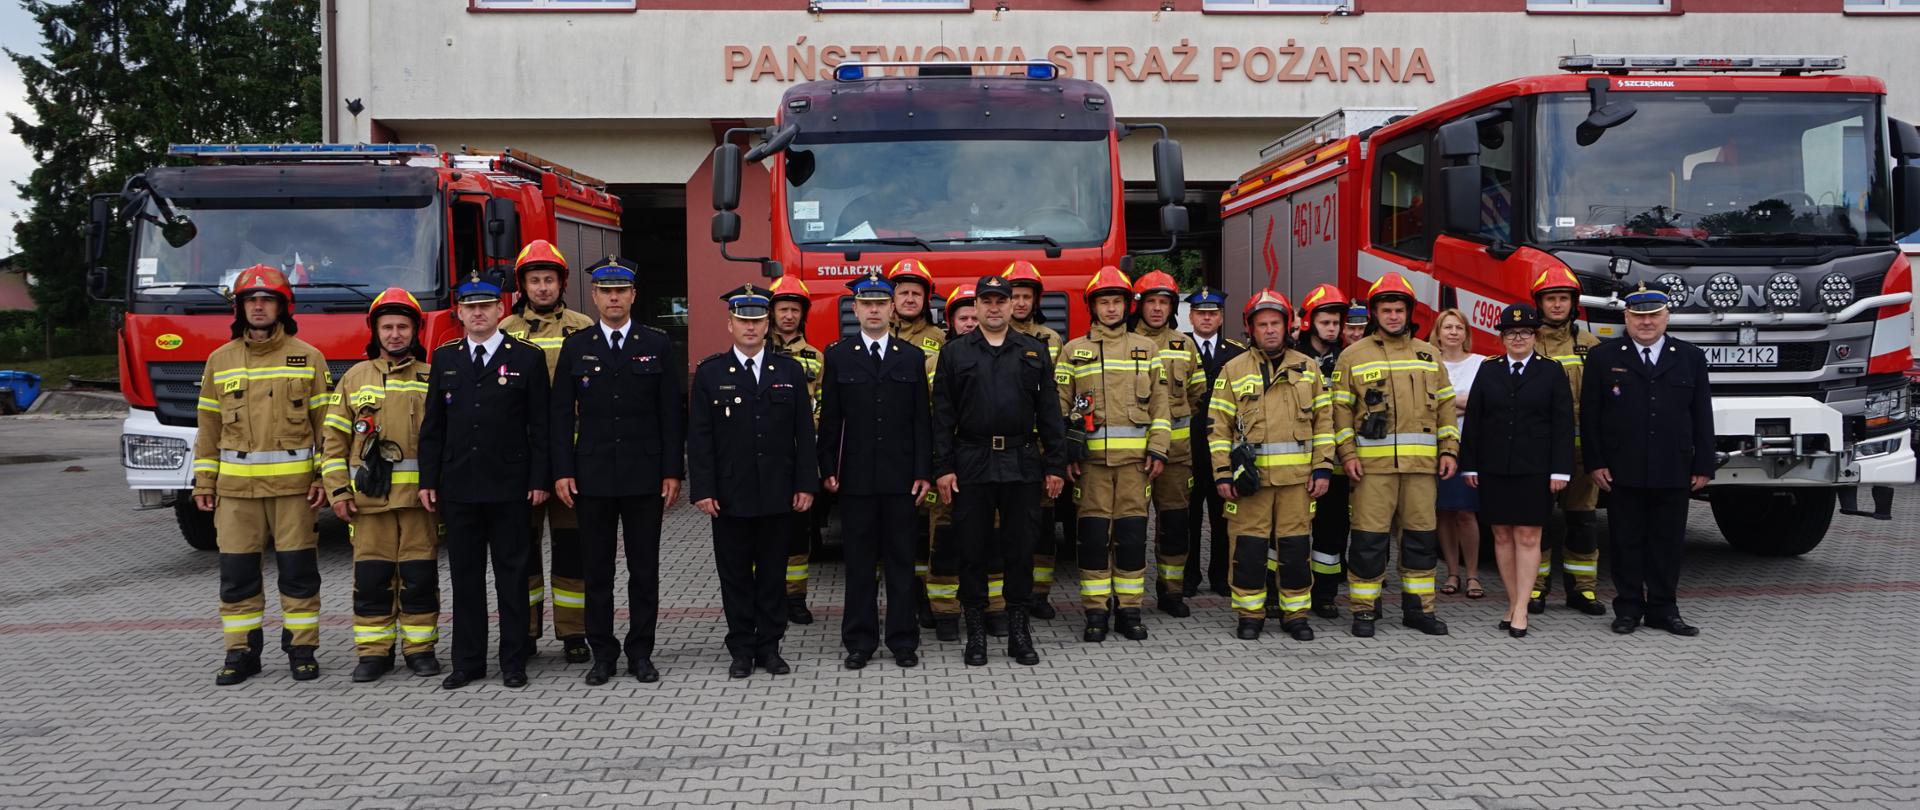 Na zdjęciu widoczni strażacy z Jednostki Ratowniczo- Gaśniczej w Miechowie na tle samochodów pożarniczych oraz budynku jednostki.
